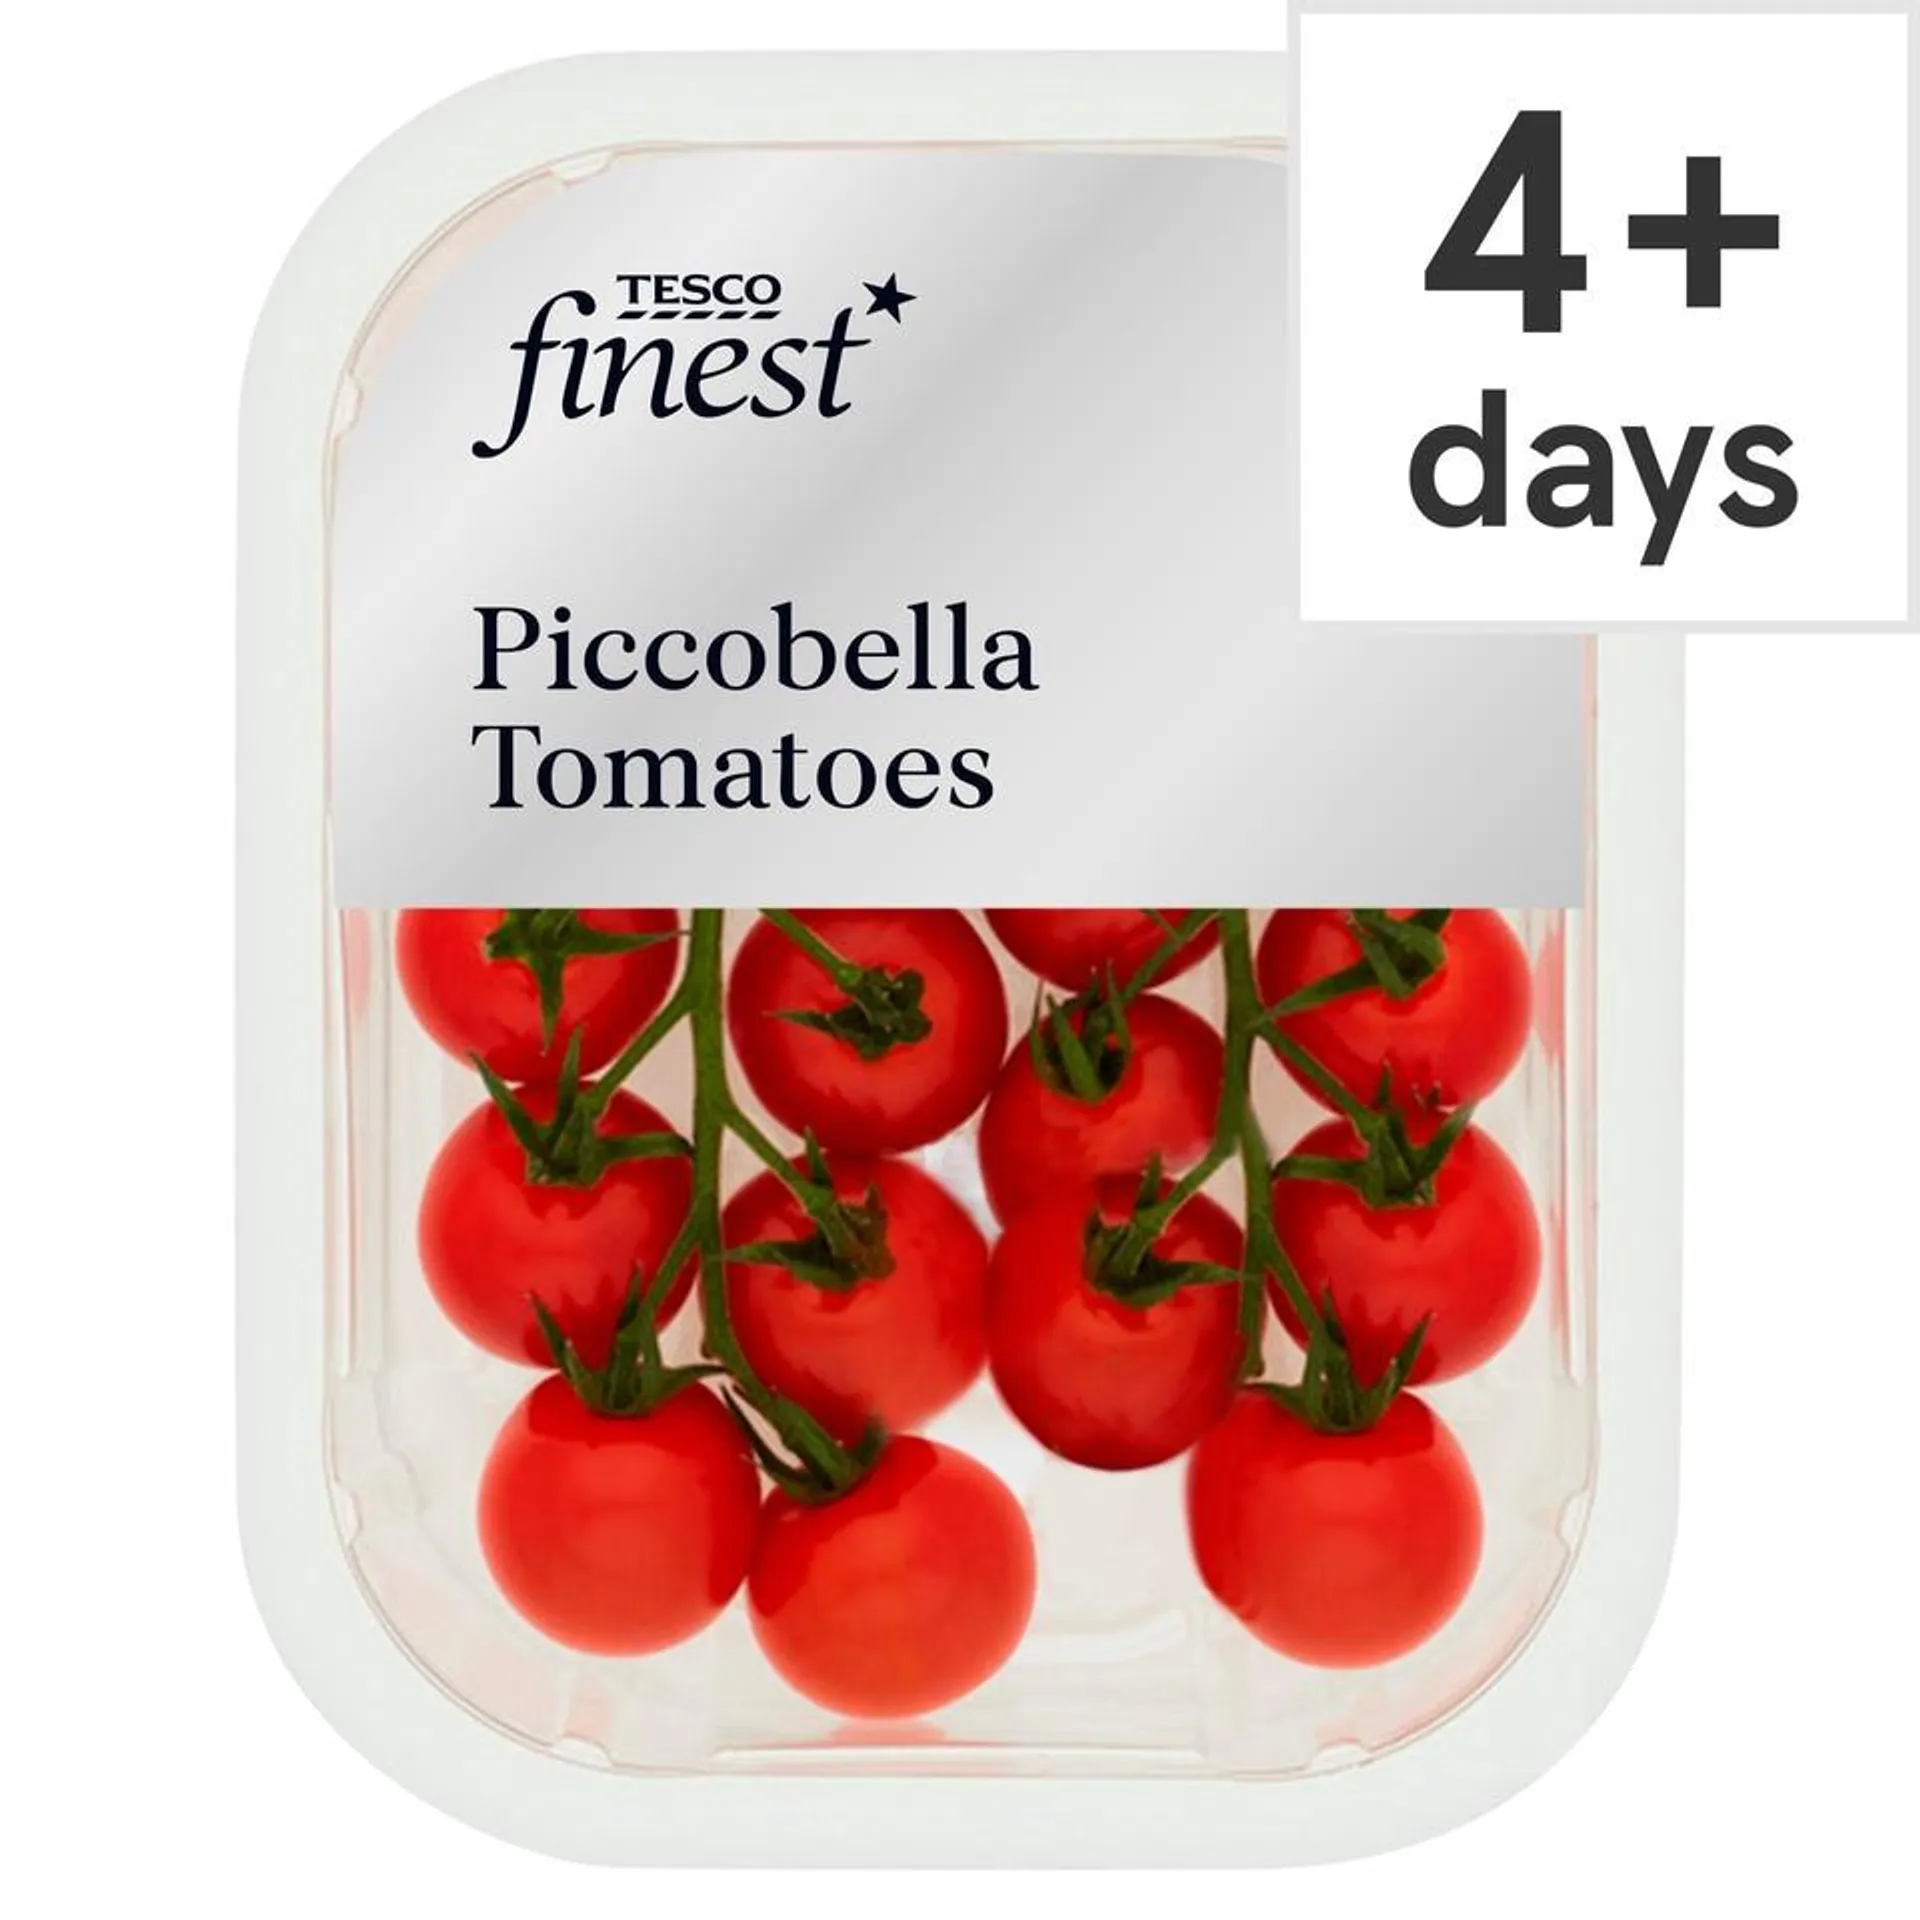 Tesco Finest Piccobella Tomatoes 220G